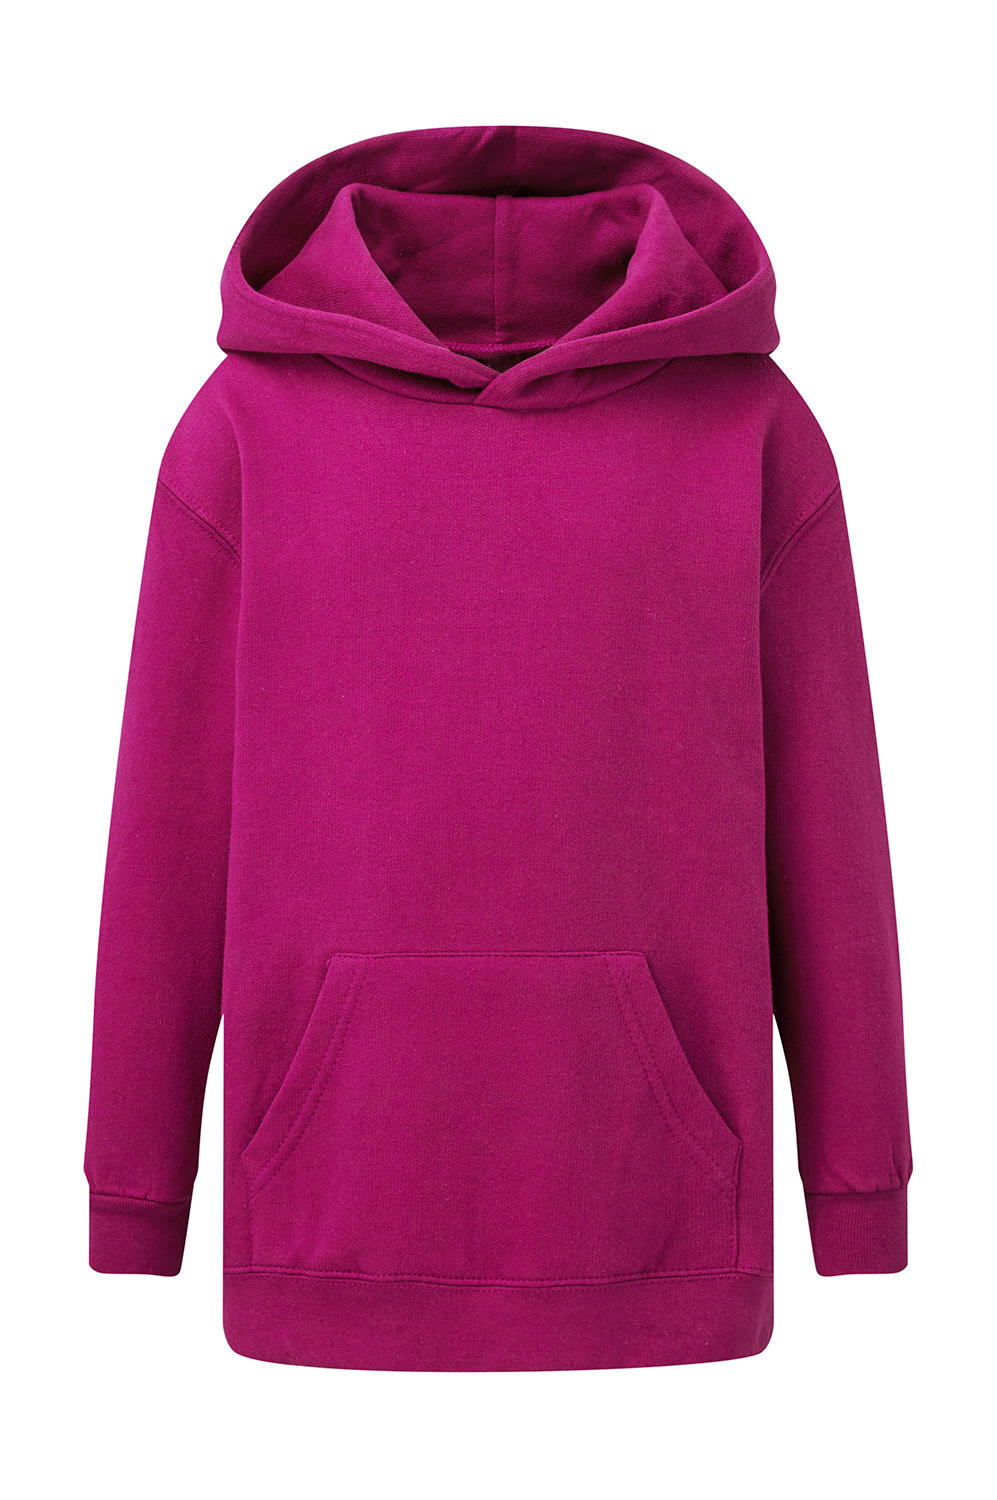  Kids Hooded Sweatshirt in Farbe Dark Pink